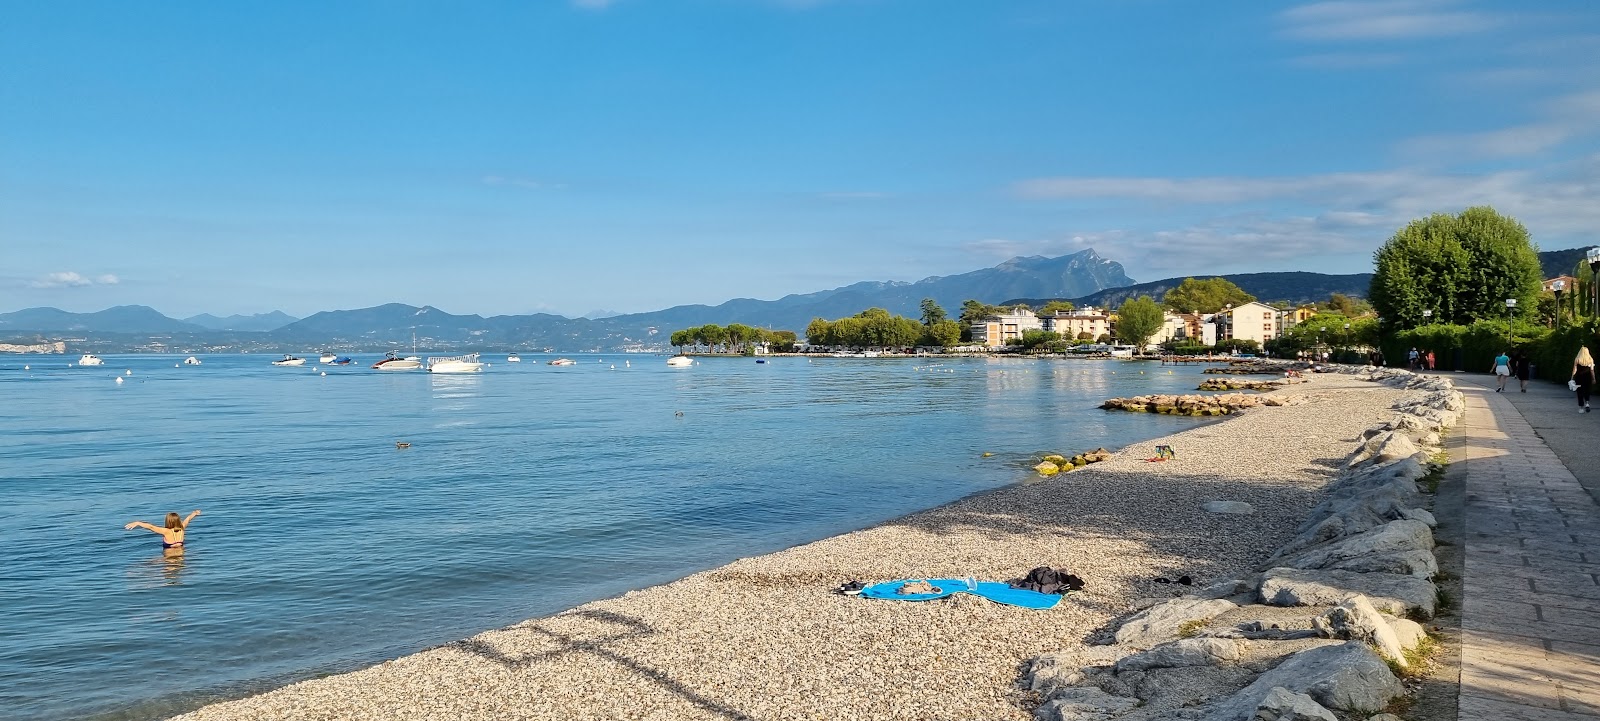 Spiaggia Lido di Cisano'in fotoğrafı gri çakıl taşı yüzey ile